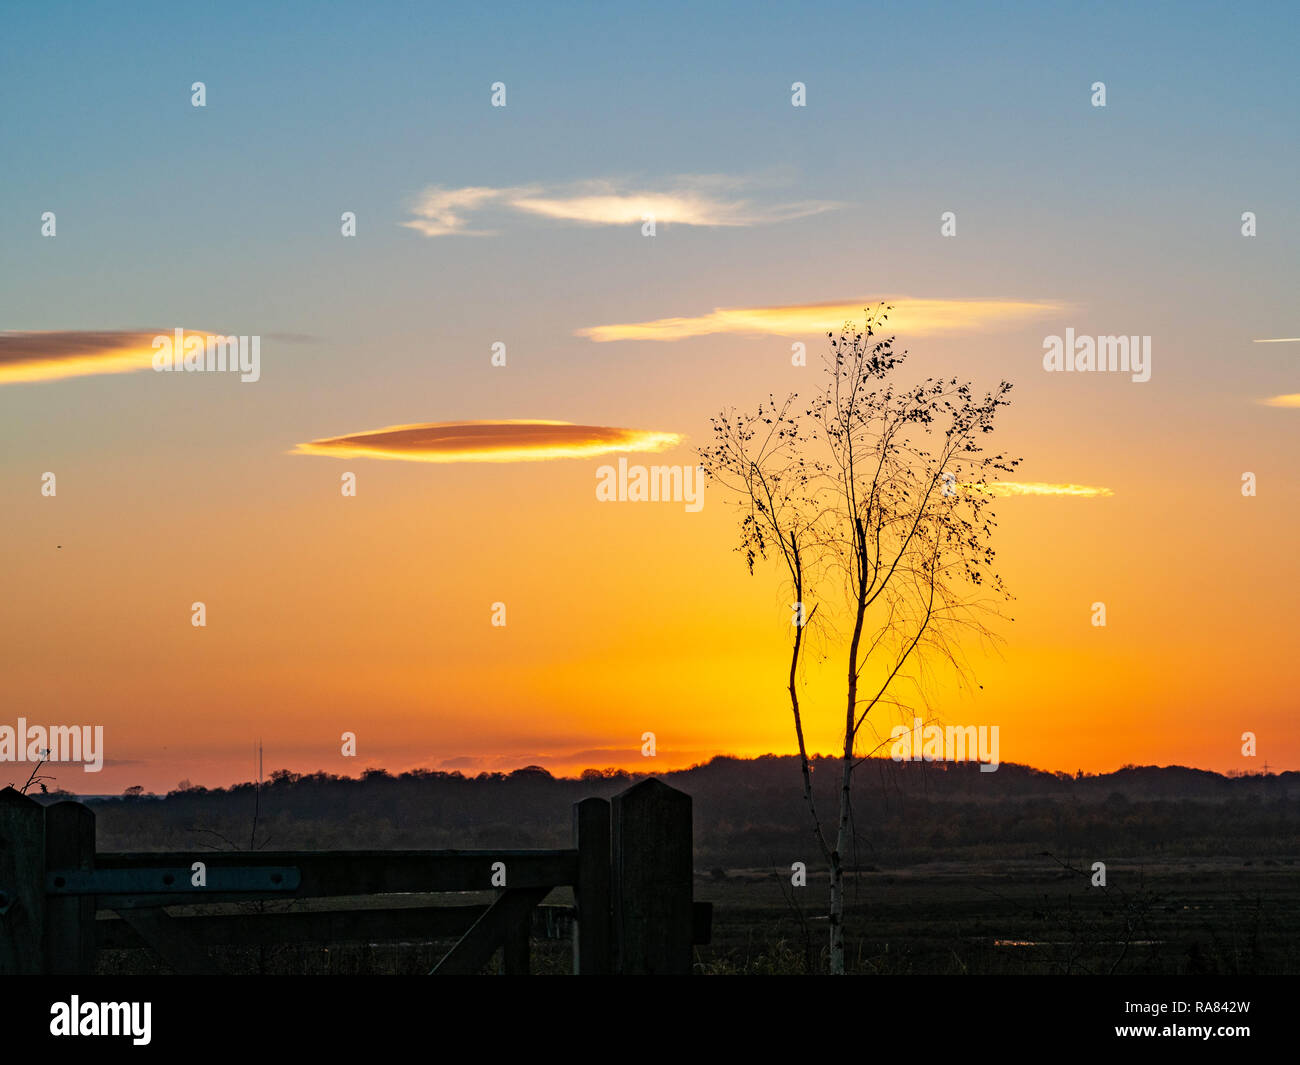 Hermoso atardecer dorado resplandor con un solo árbol de silueta y nubes iluminadas en la Reserva Natural de San Aidan, Yorkshire, Inglaterra Foto de stock